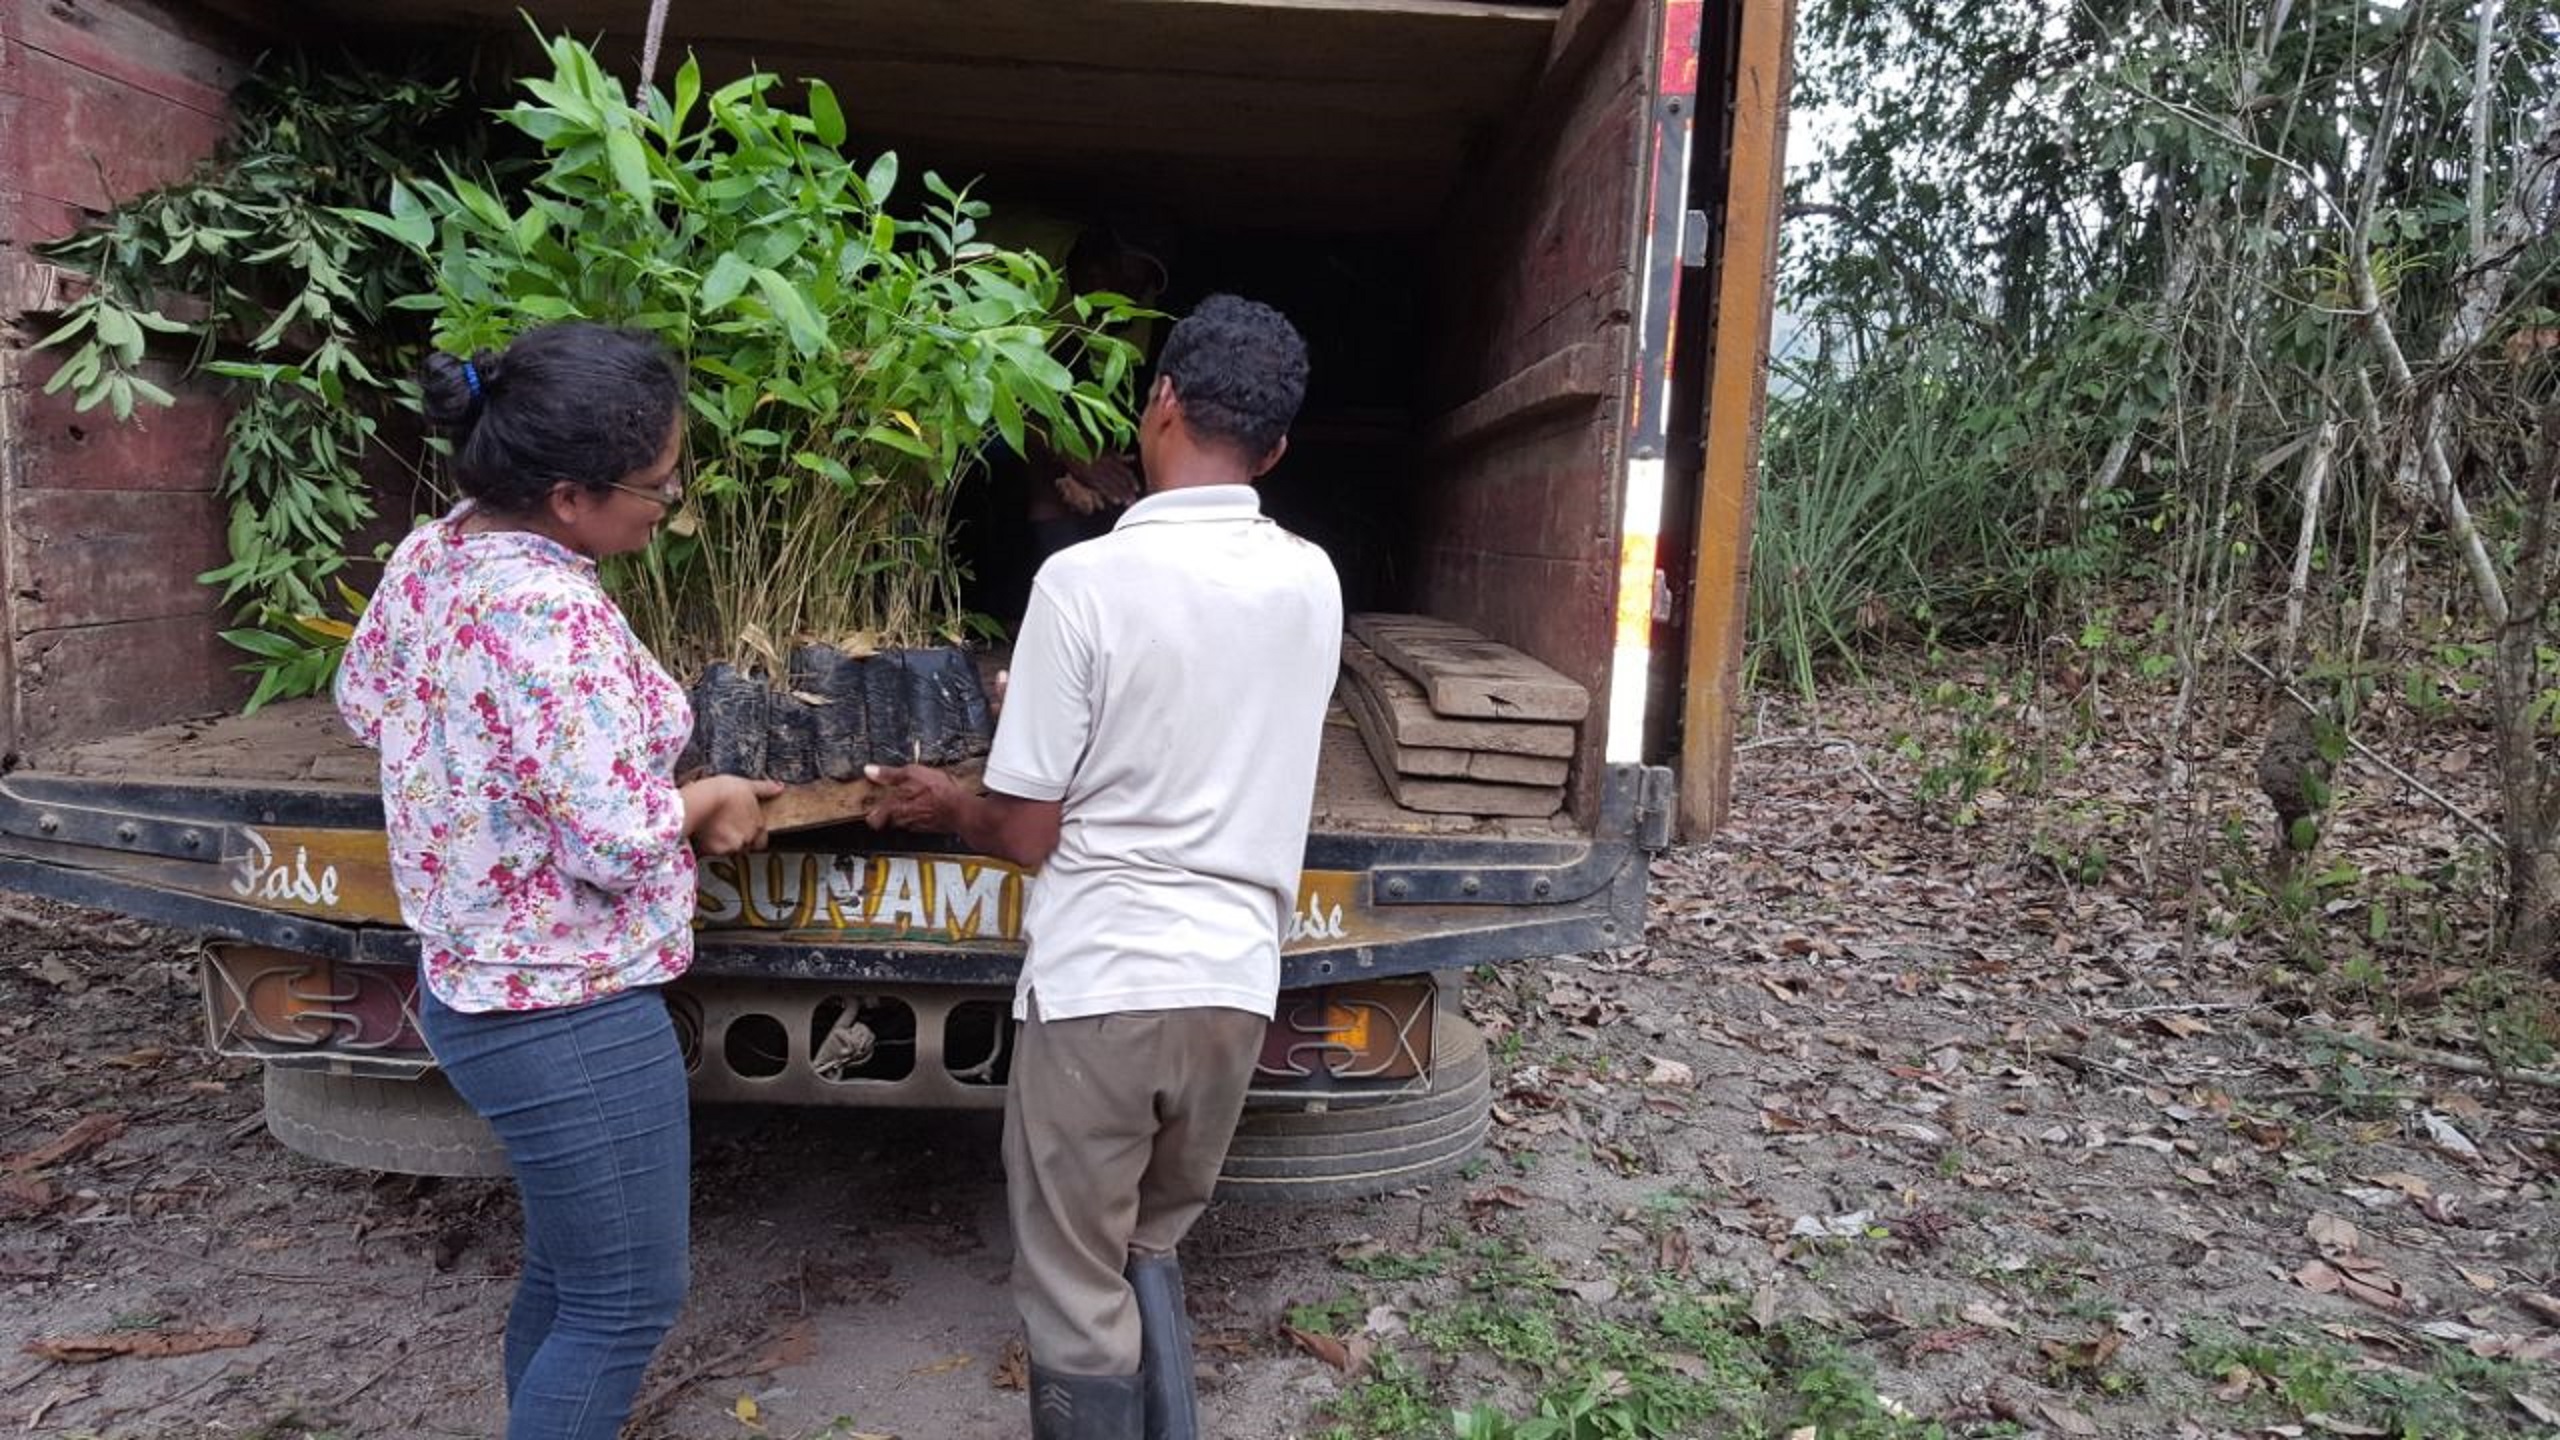 jonge boompjes worden uit vrachtwagen gehaald voor herbebossing